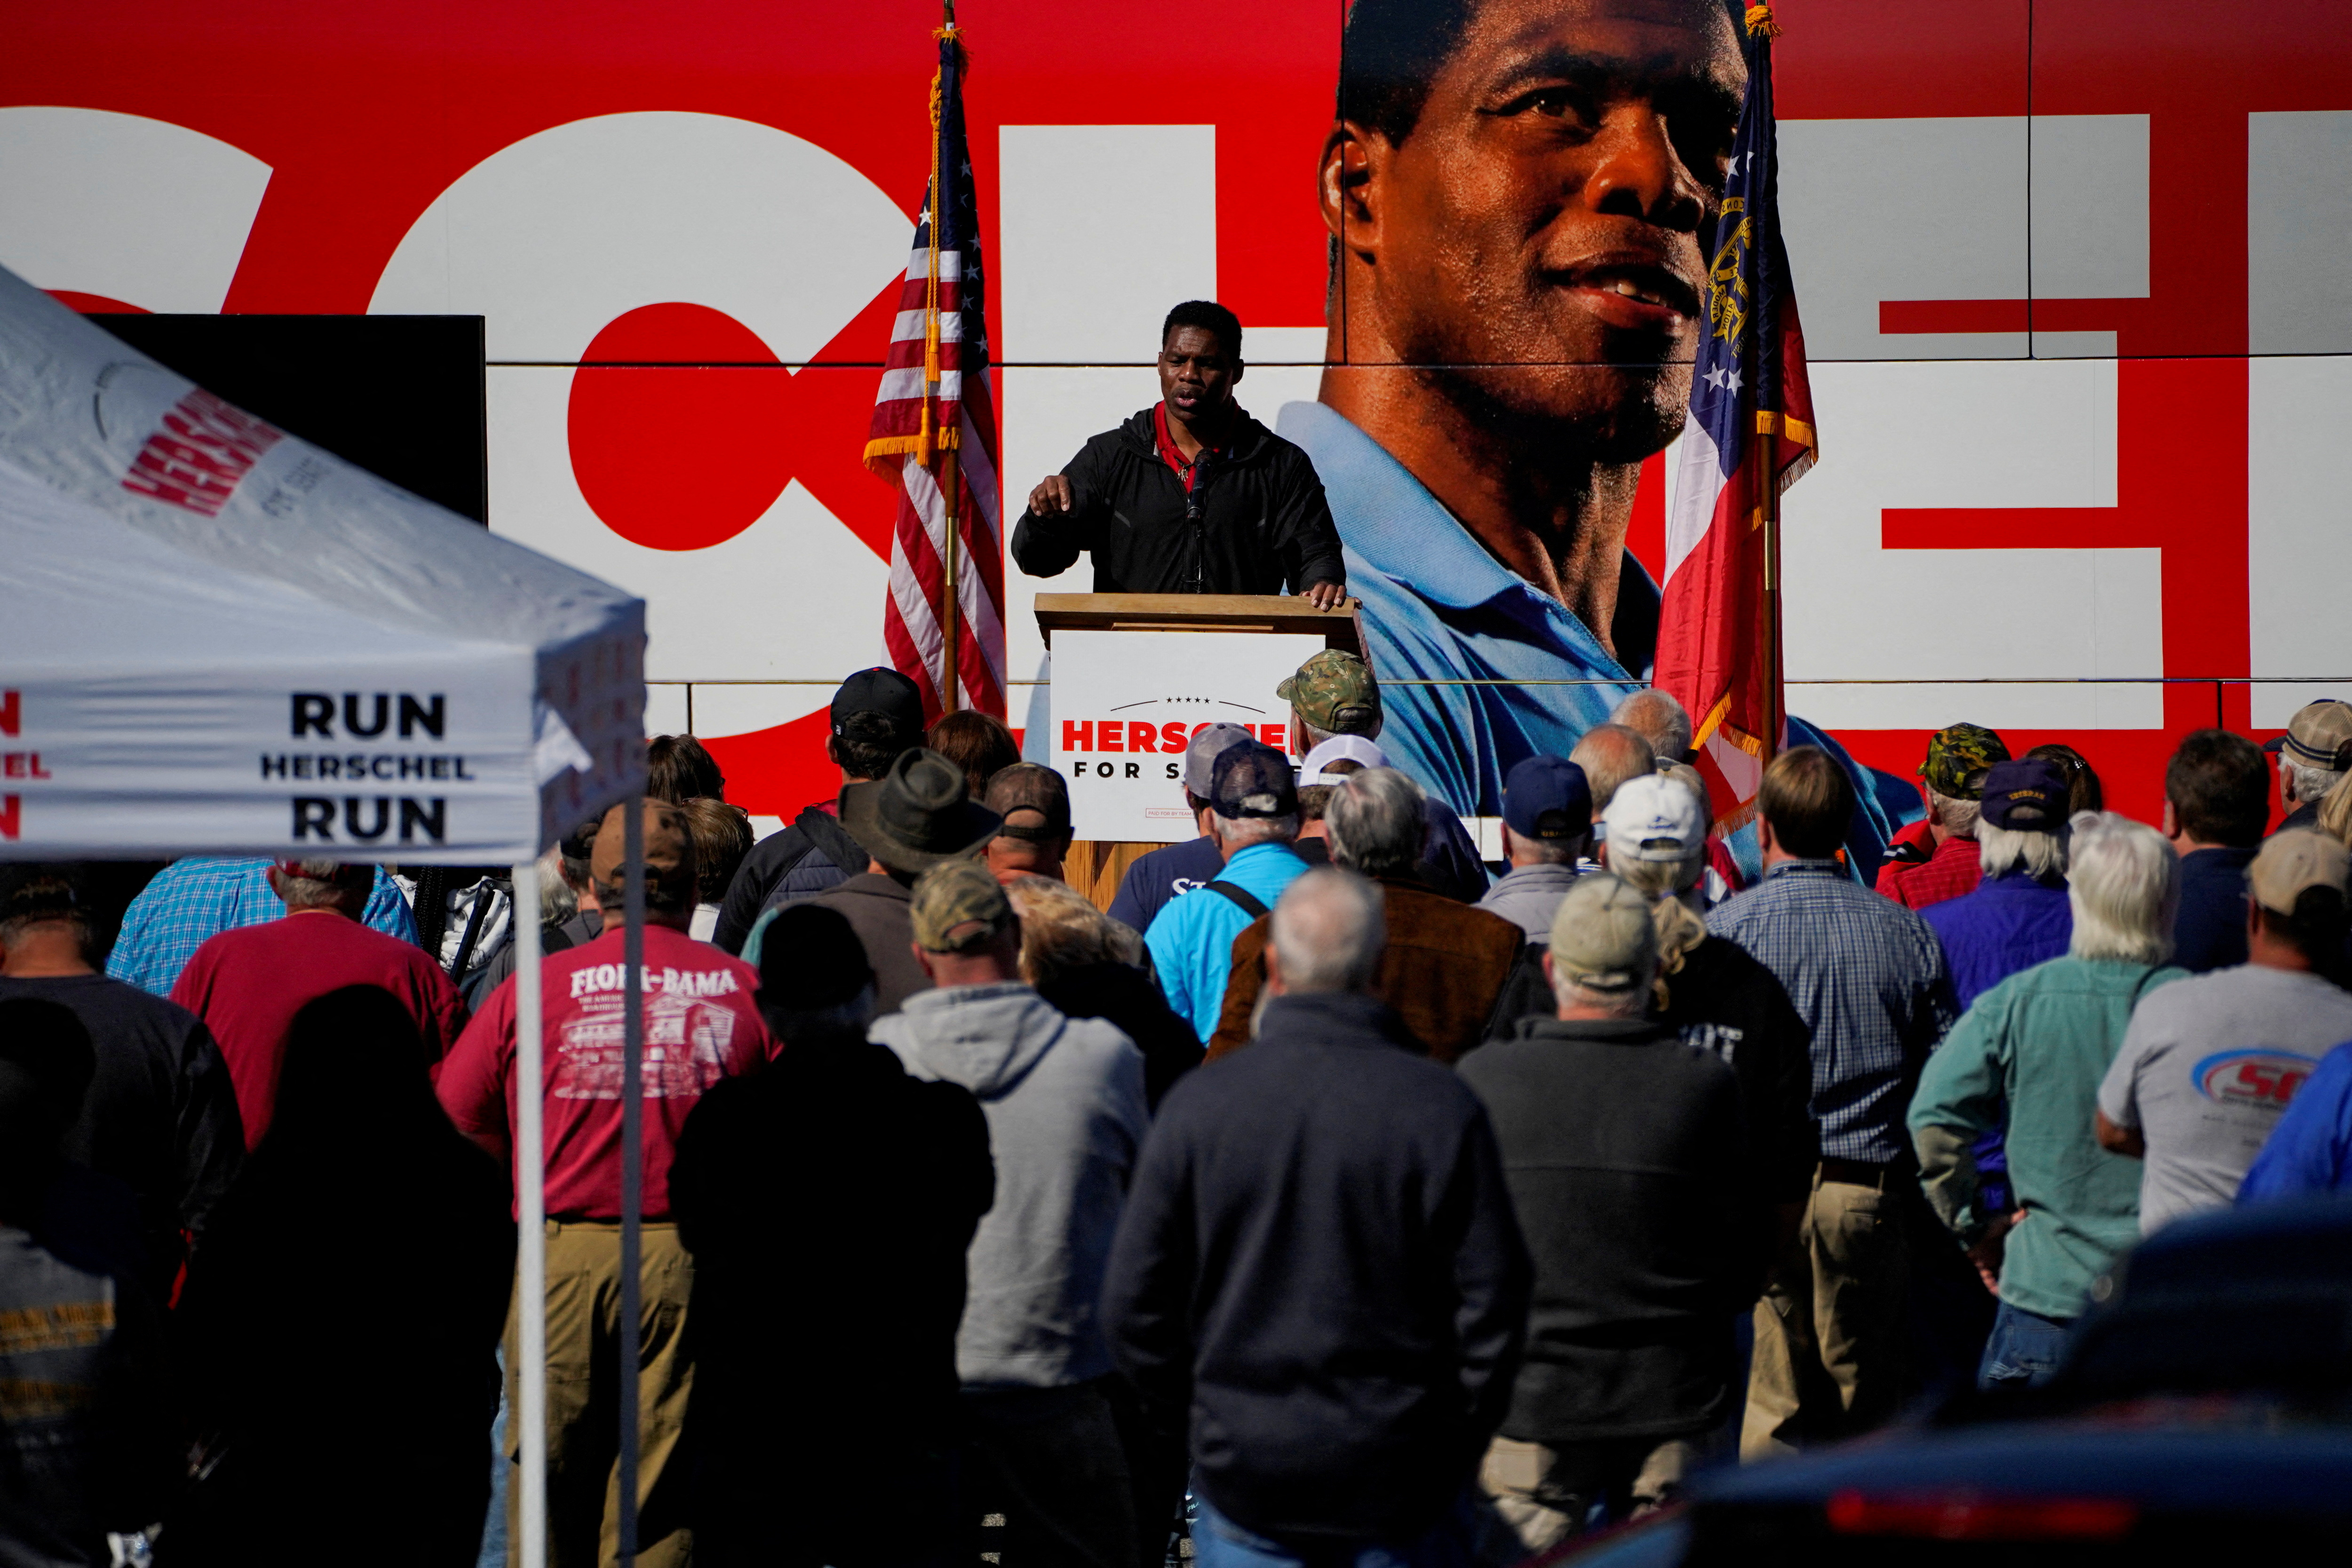 El candidato a senador y ex estrella del fútbol americano, Herschel Walker, durante un acto de campaña en Americus, Georgia. Es uno de los favoritos de Trump. (REUTERS/Cheney Orr).